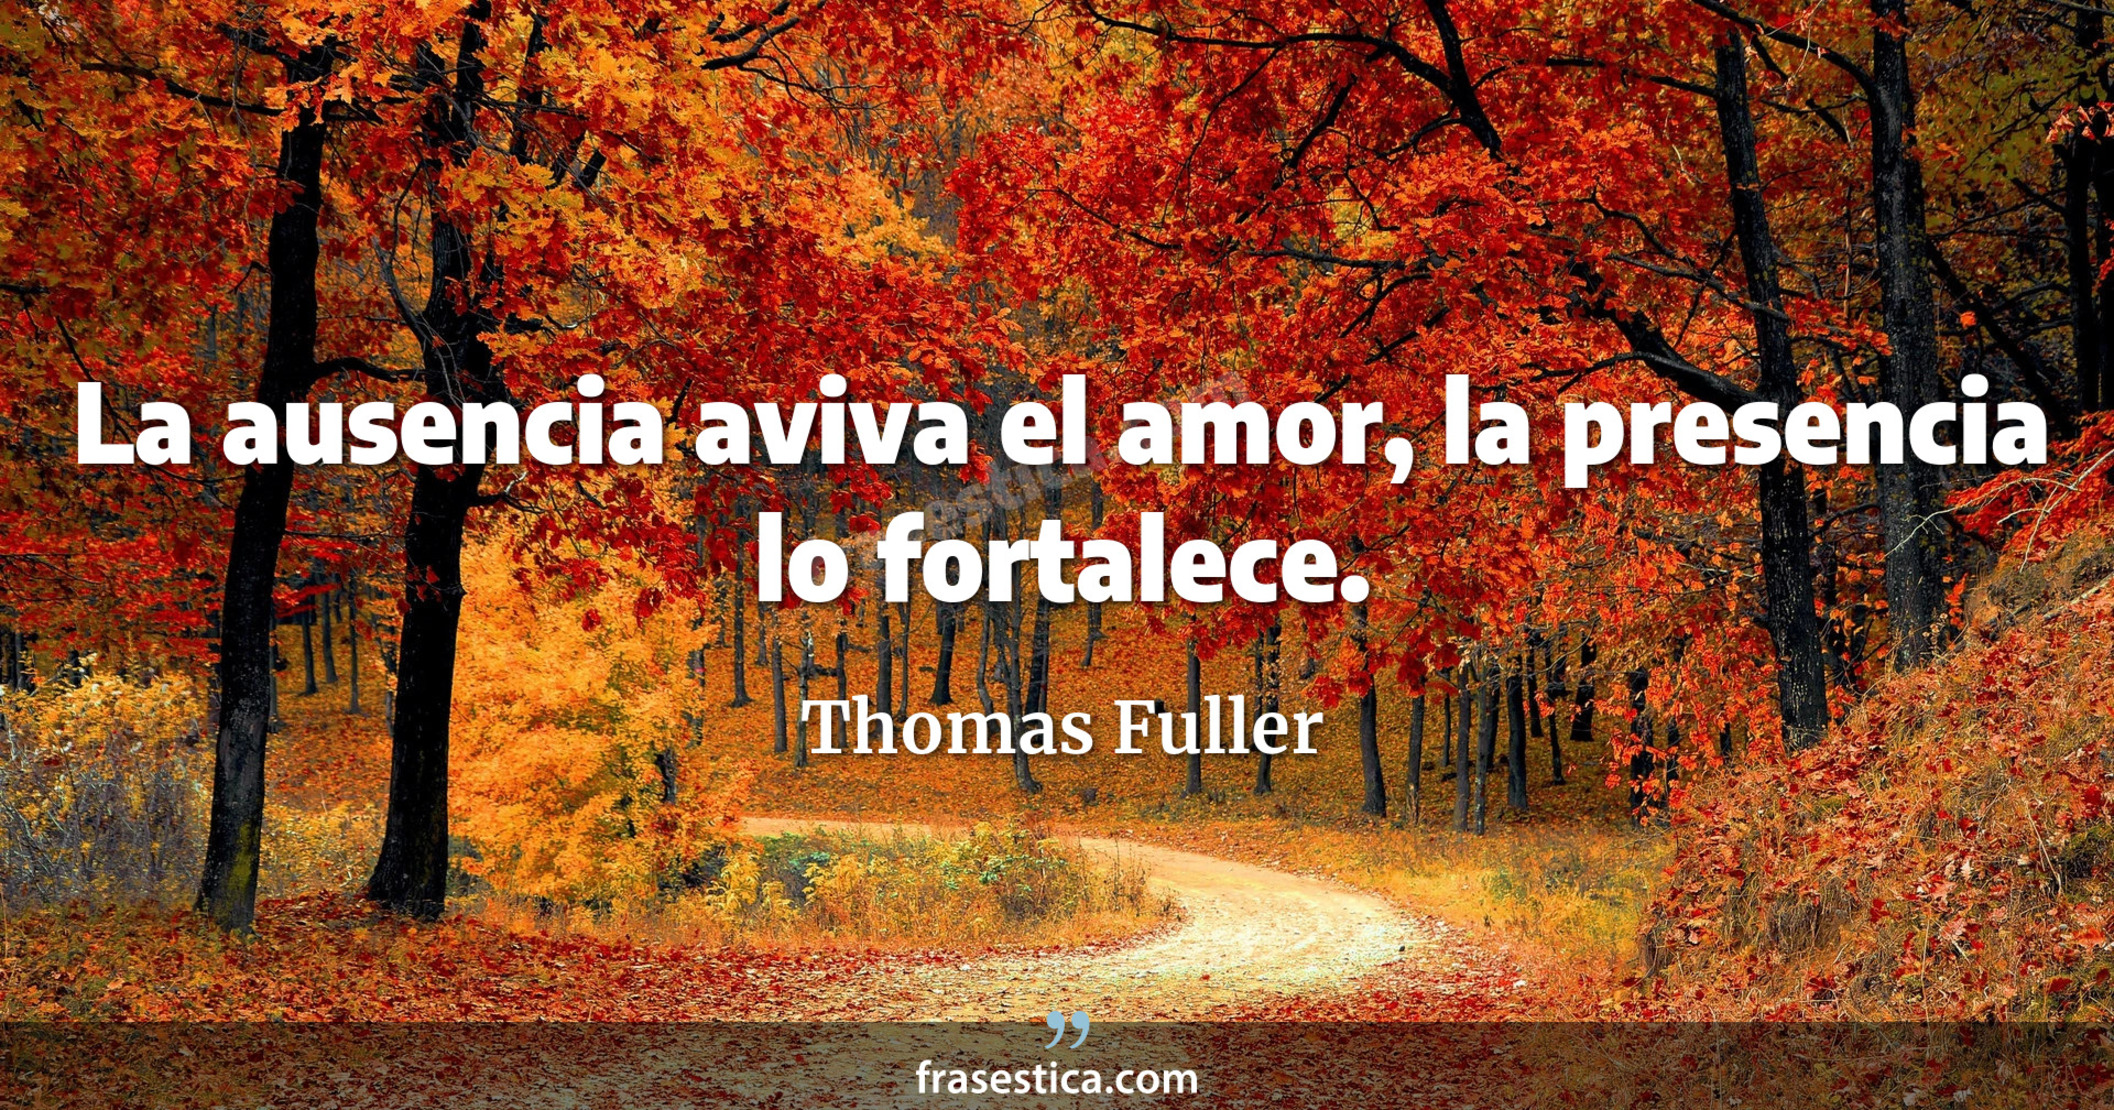 La ausencia aviva el amor, la presencia lo fortalece. - Thomas Fuller